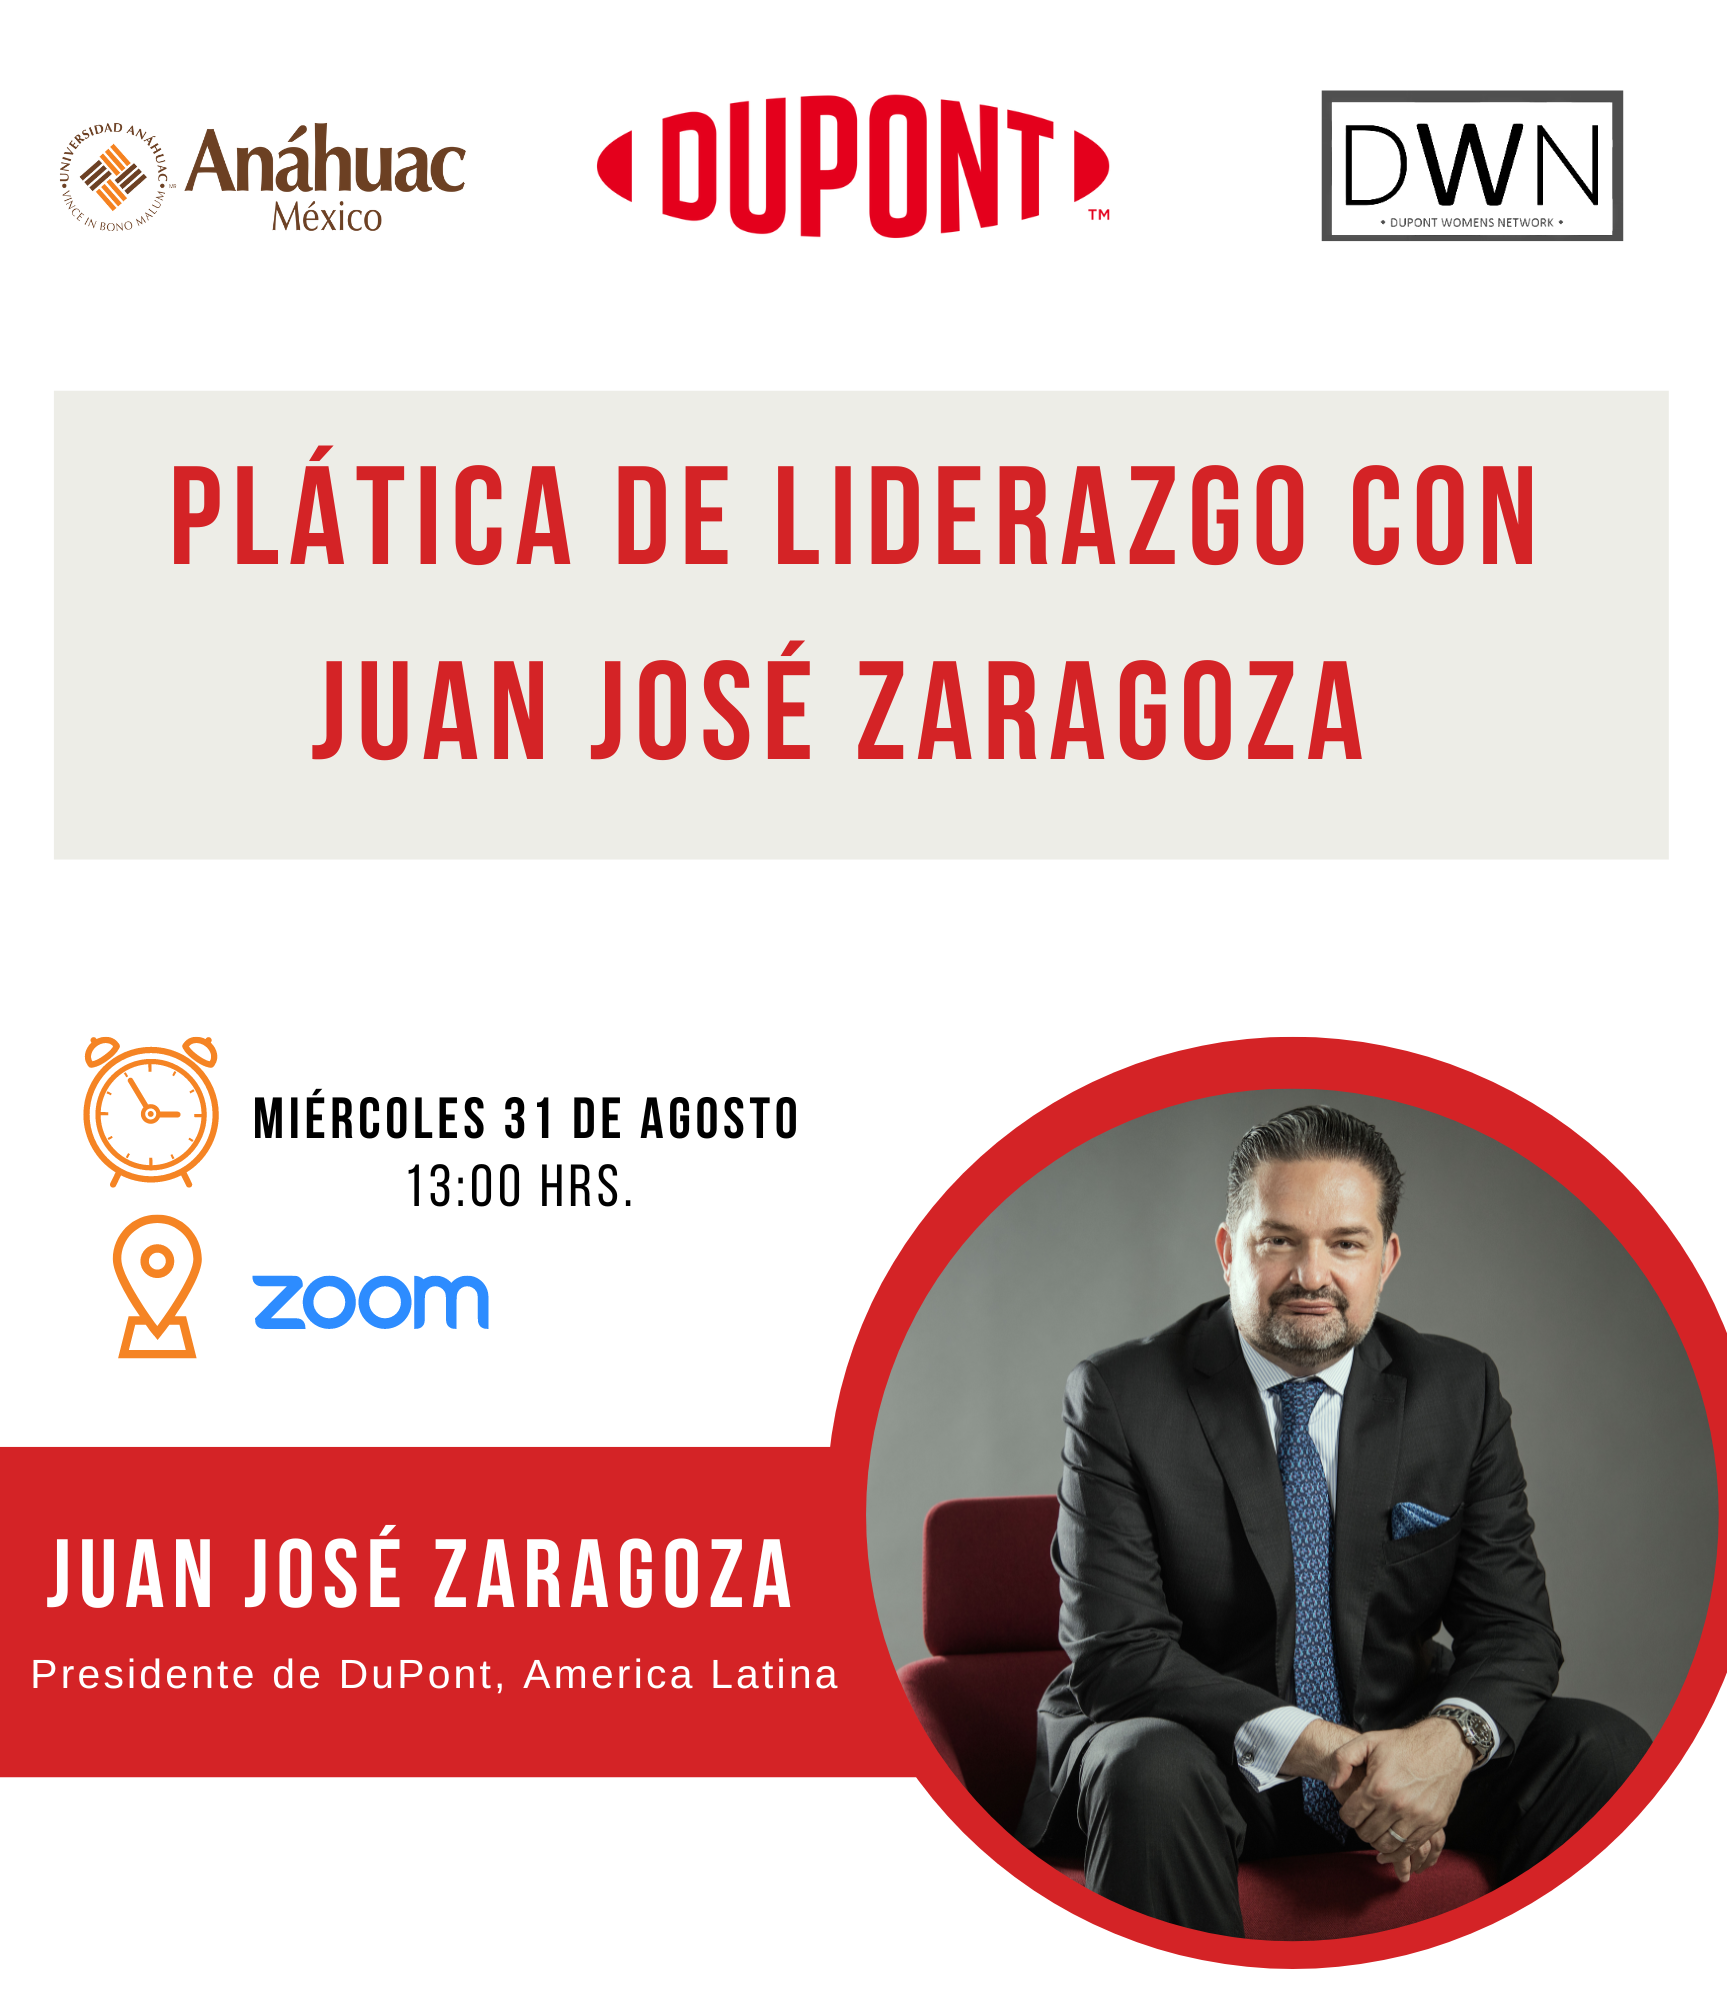 Plática de Liderazgo con Juan José Zaragoza